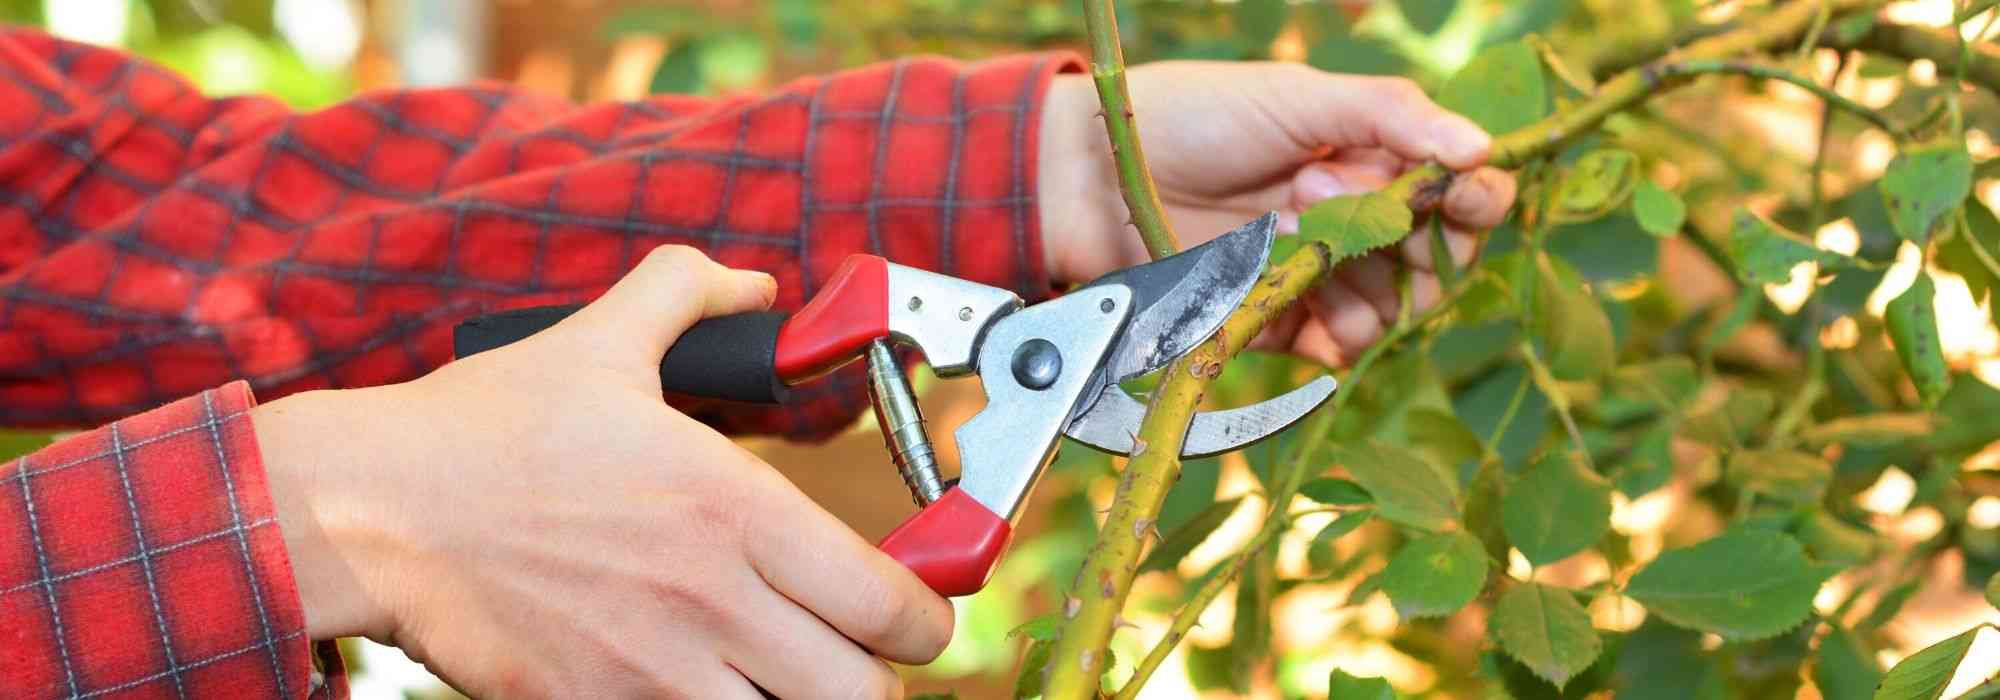 Les principaux outils de coupe manuels et leur utilisation au jardin